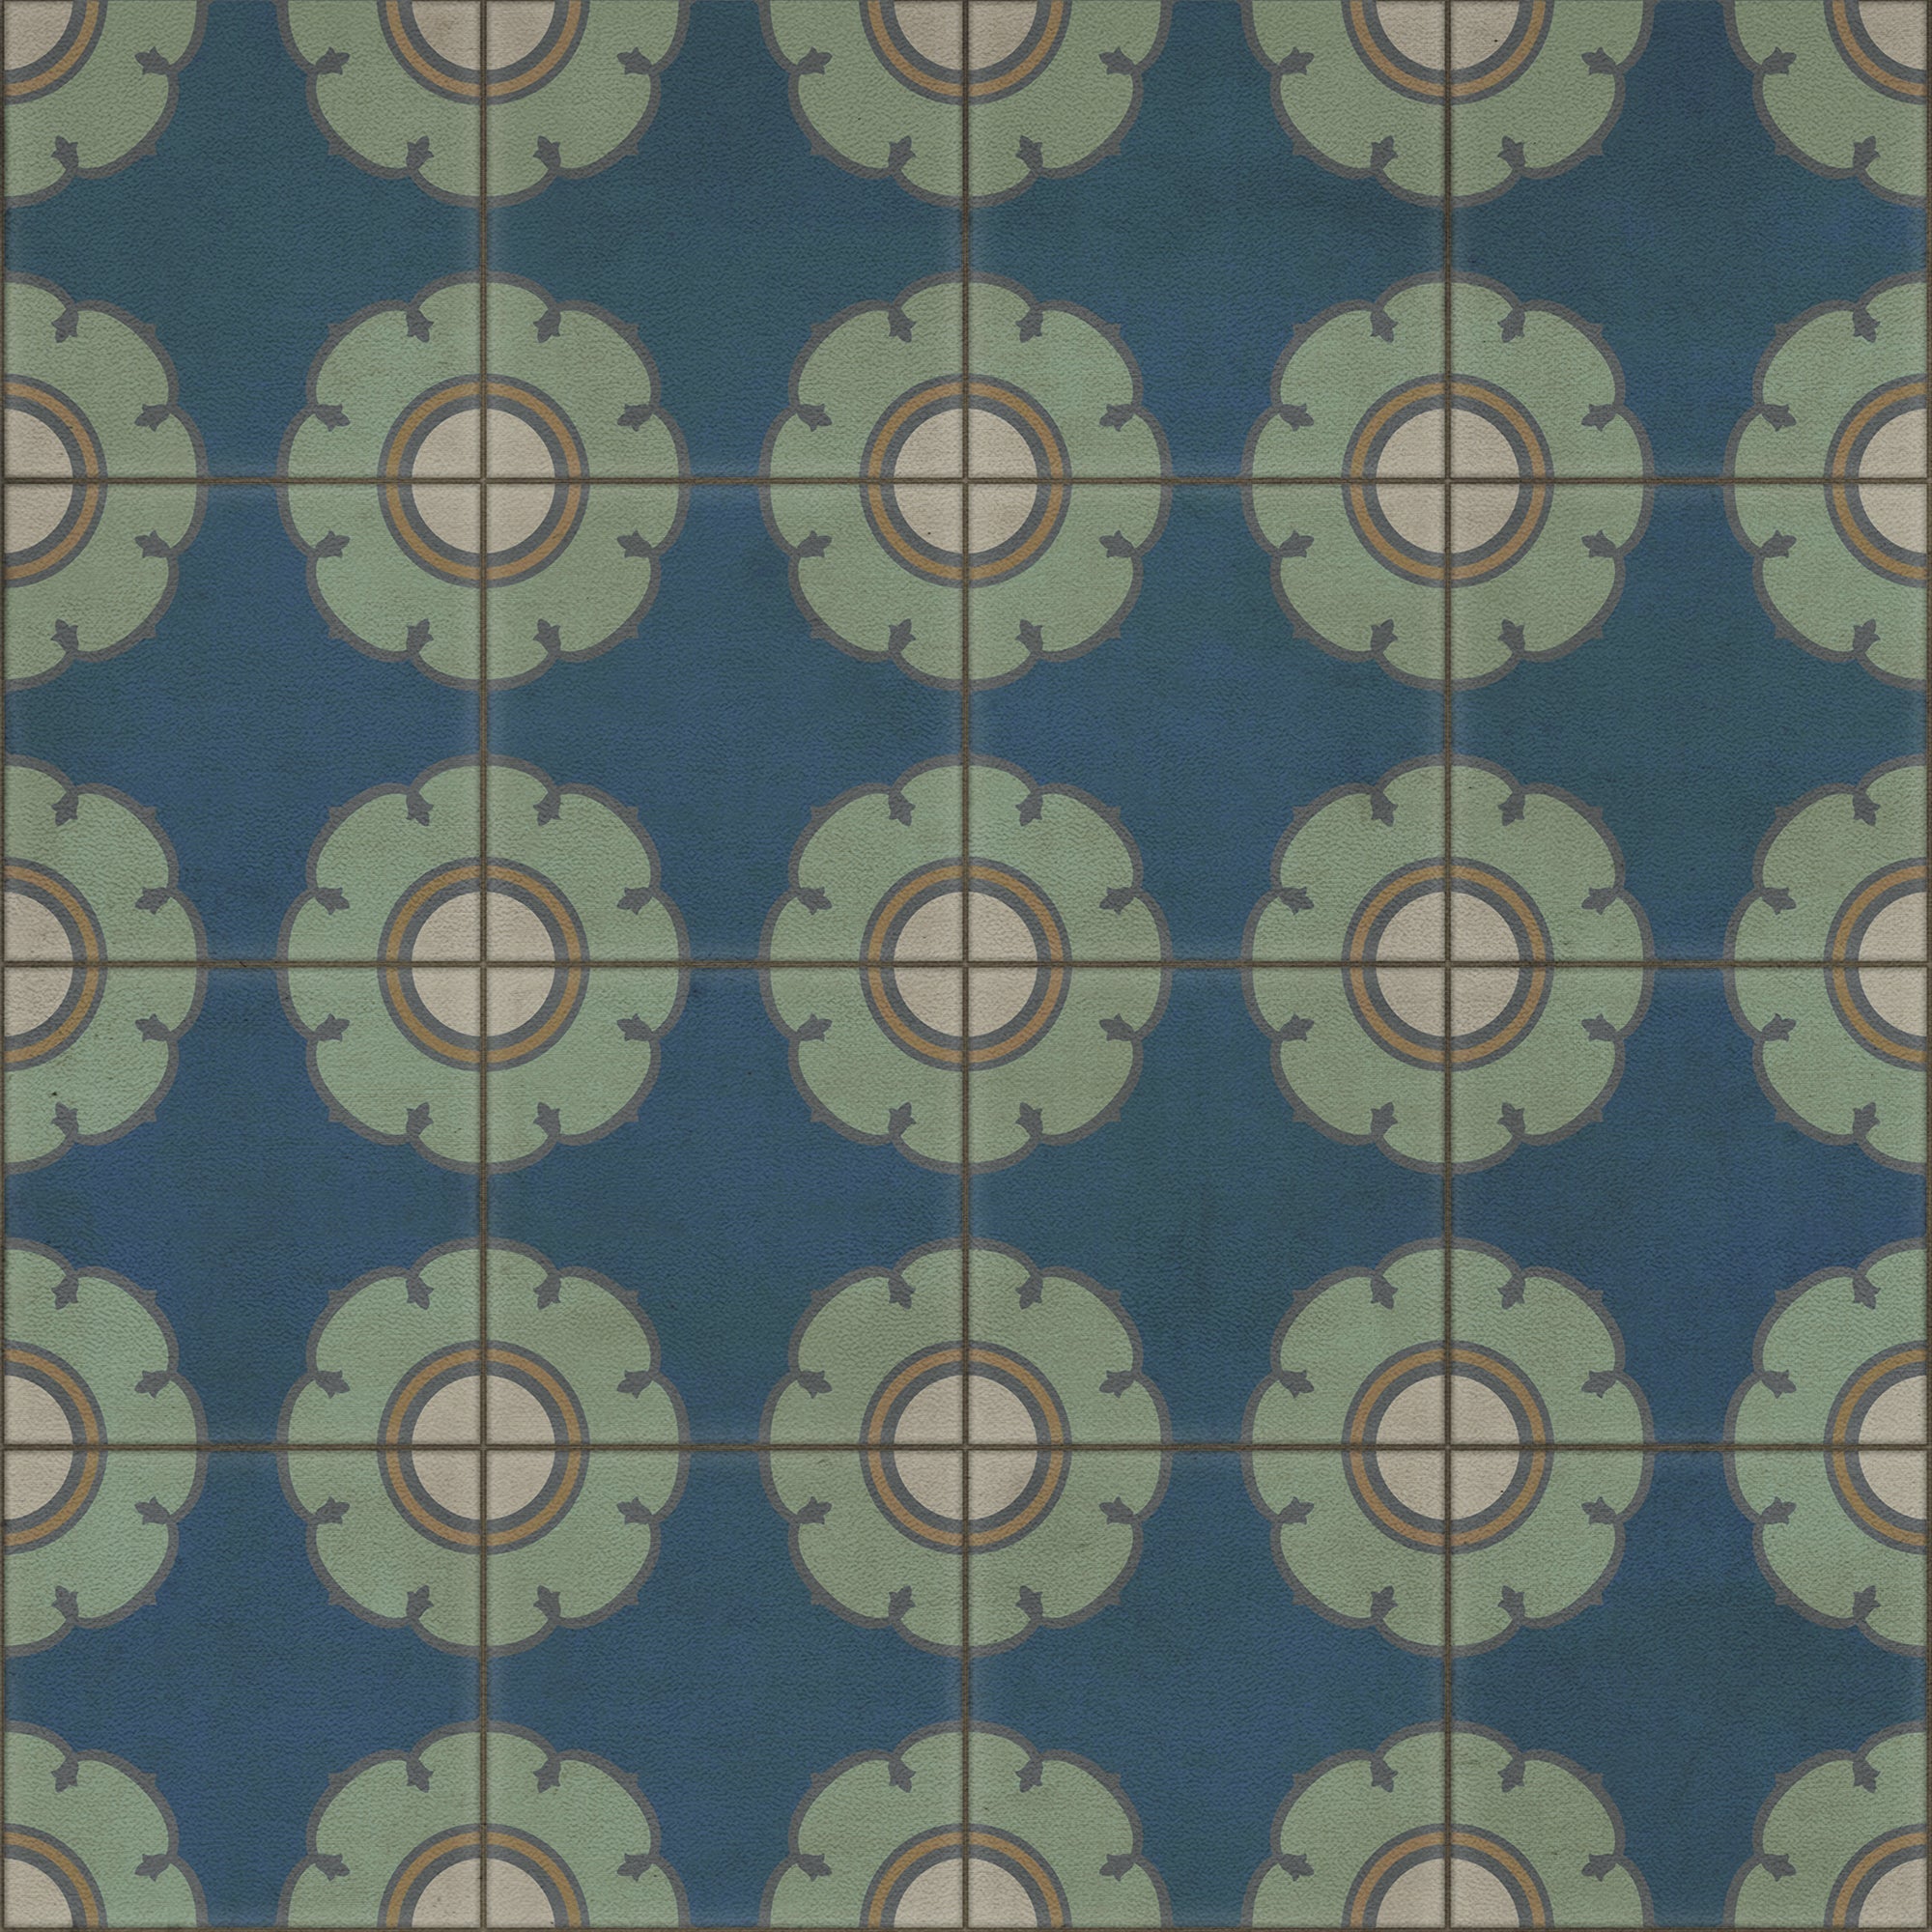 Pattern 78 Doris Day Vinyl Floor Cloth